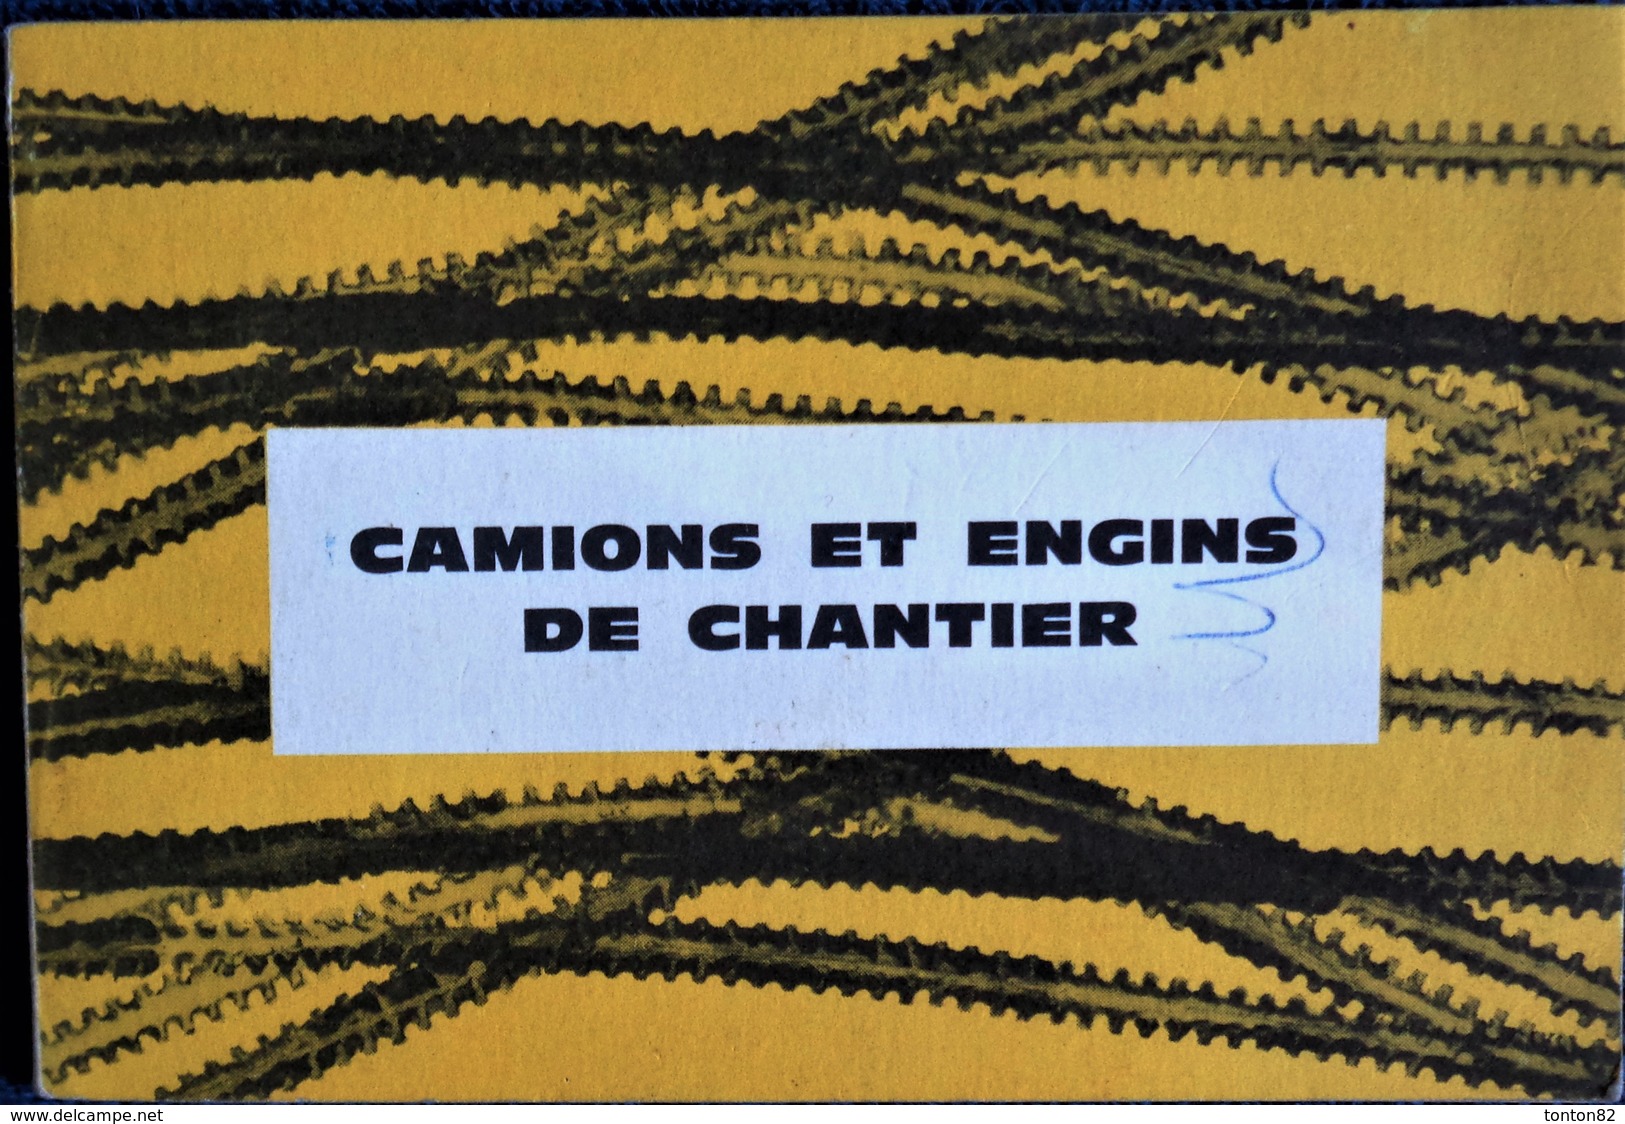 Camions Et Engins De Chantier - Conseils . - Bricolage / Tecnica